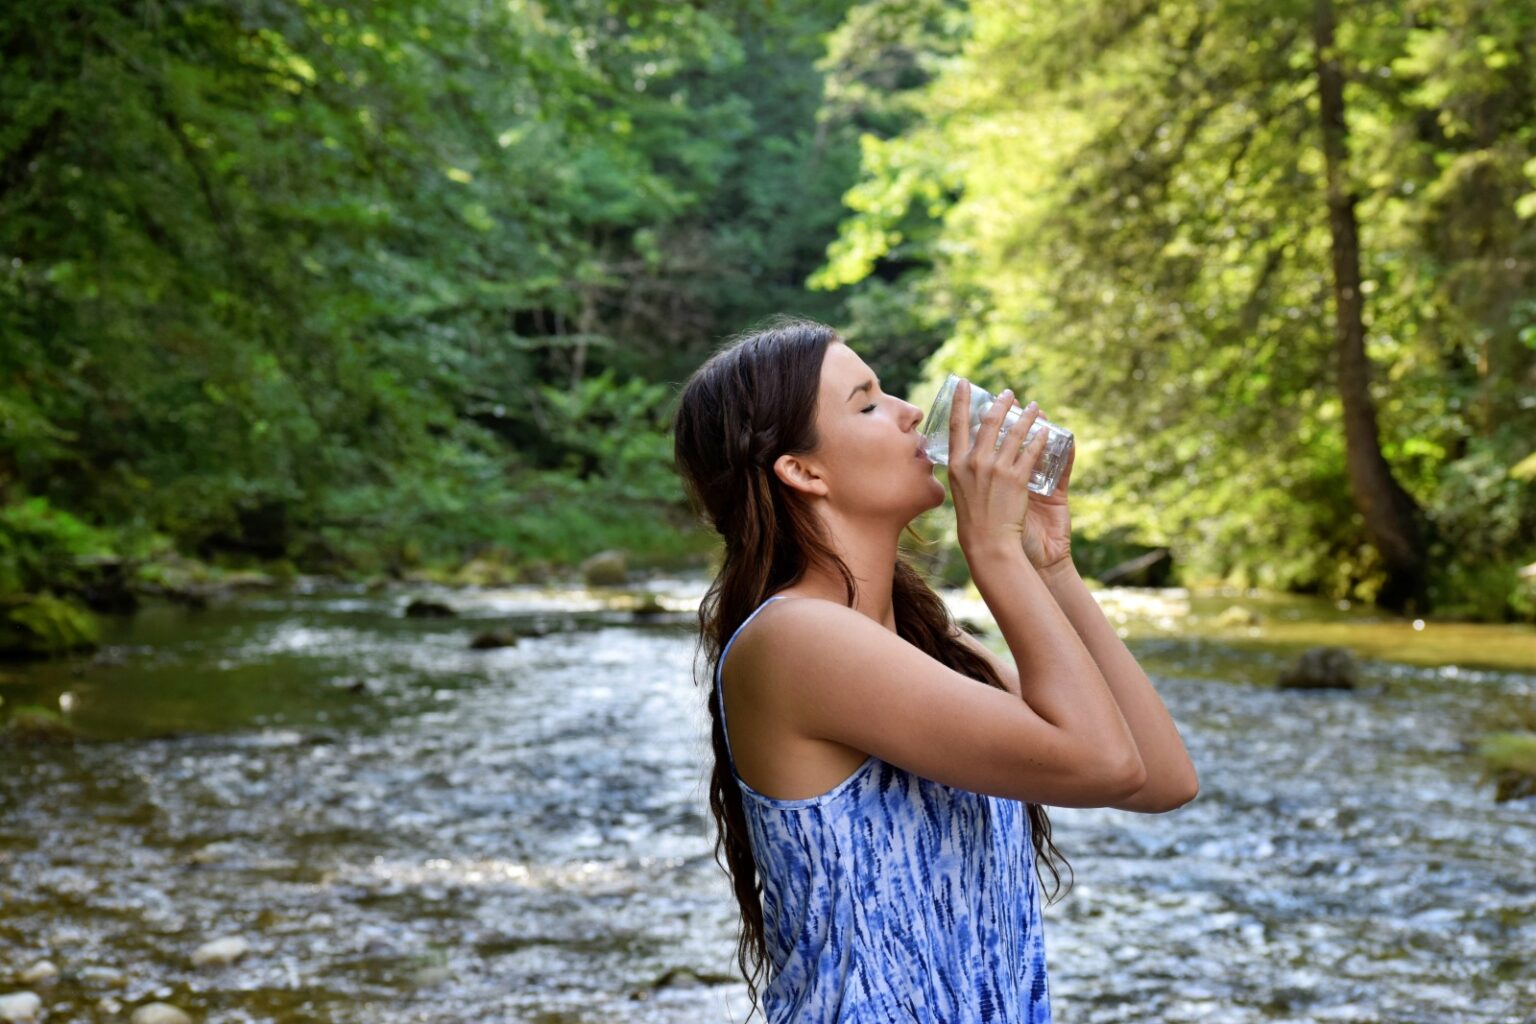 하루 수분 섭취량, 여성이 물을 마시고 있다